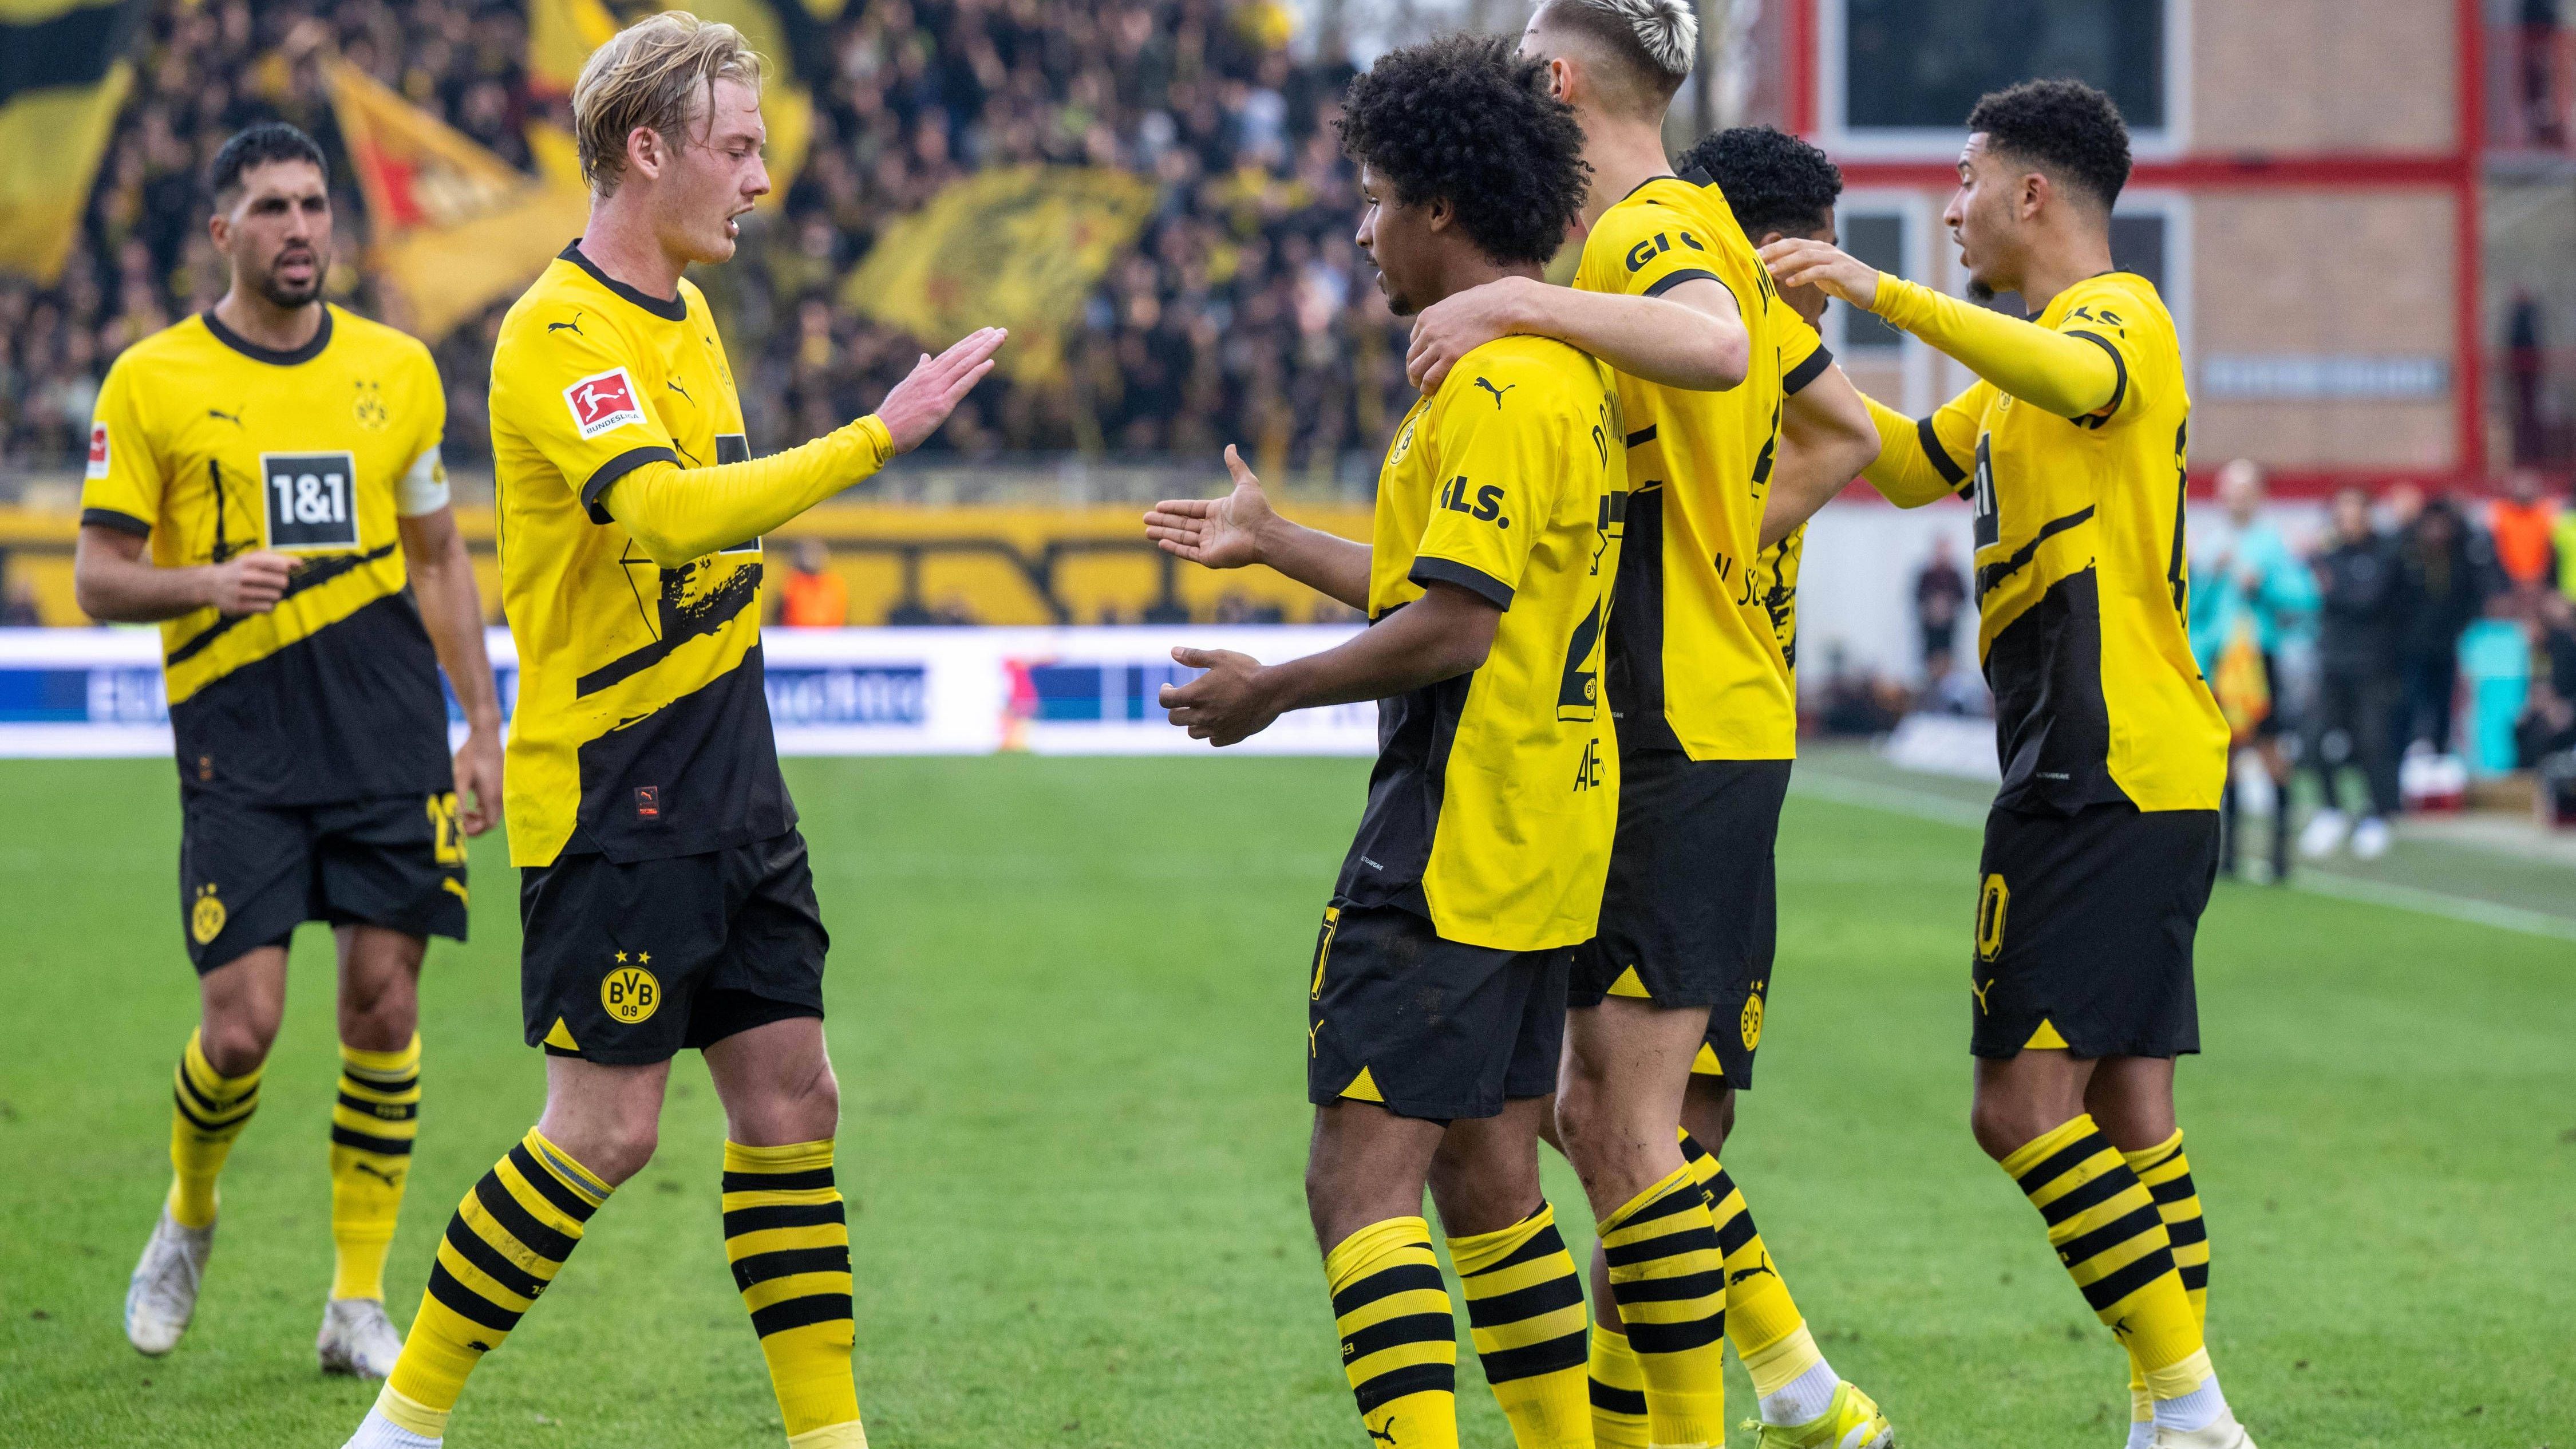 <strong>BVB bei Union Berlin: Die Noten für Borussia Dortmund</strong><br>Borussia Dortmund schlägt in der Bundesliga Union Berlin mit 2:0, zeigt weitestgehend aber eine überschaubare Leistung. Die Noten und Einzelkritiken der Profis des BVB.